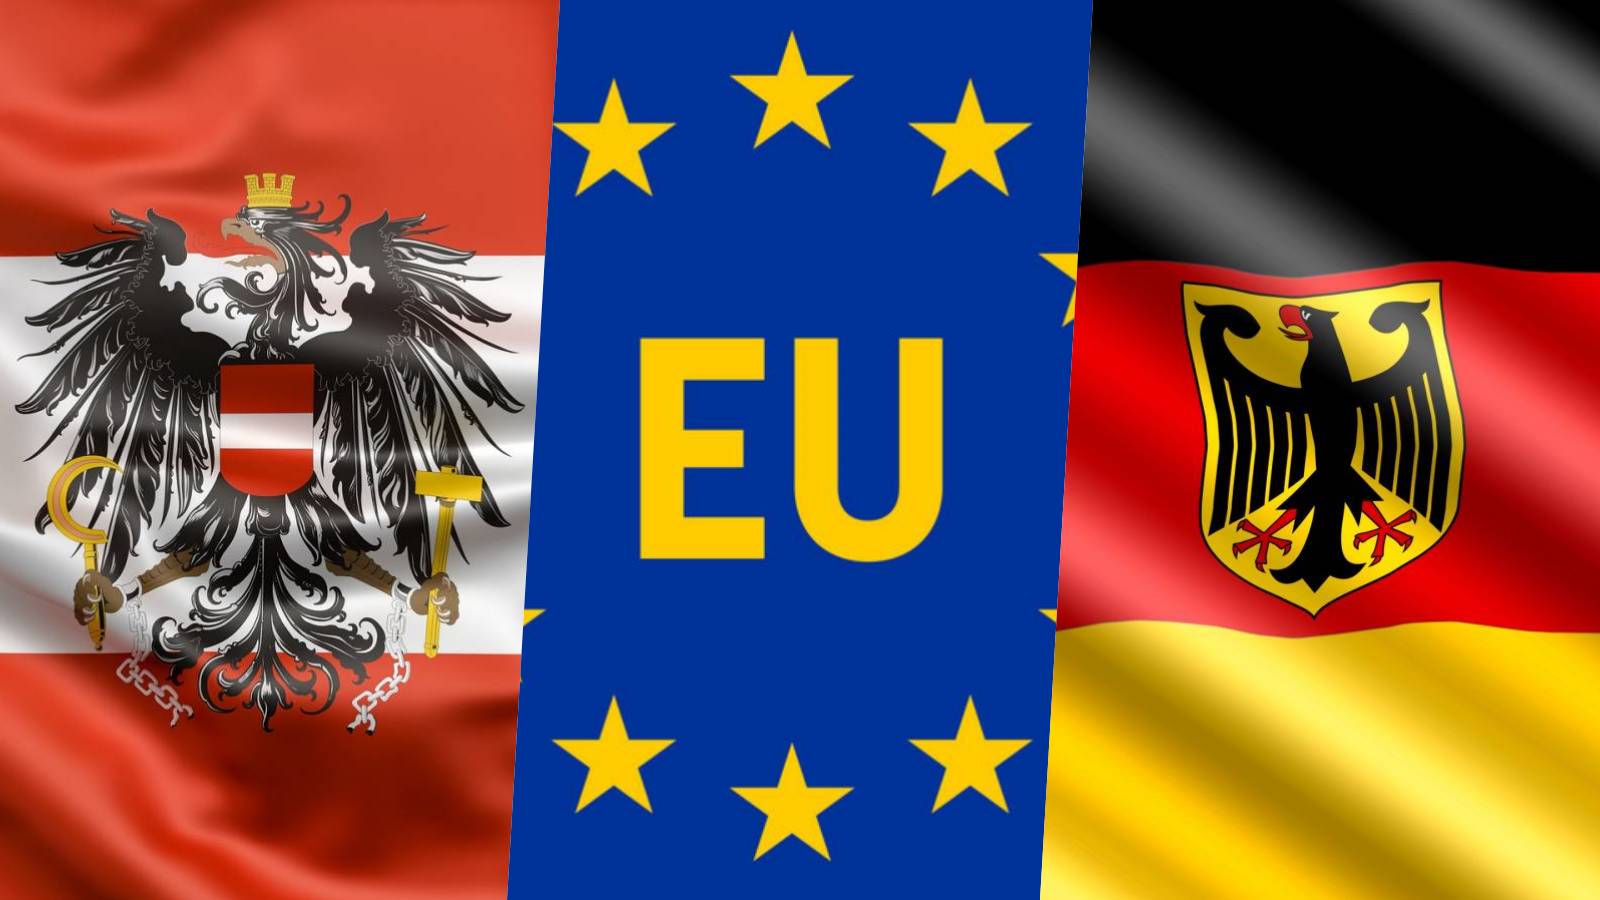 Austria AMENINTAREA Comisiei Europene Vizeaza Germania Masuri Schengen Romania